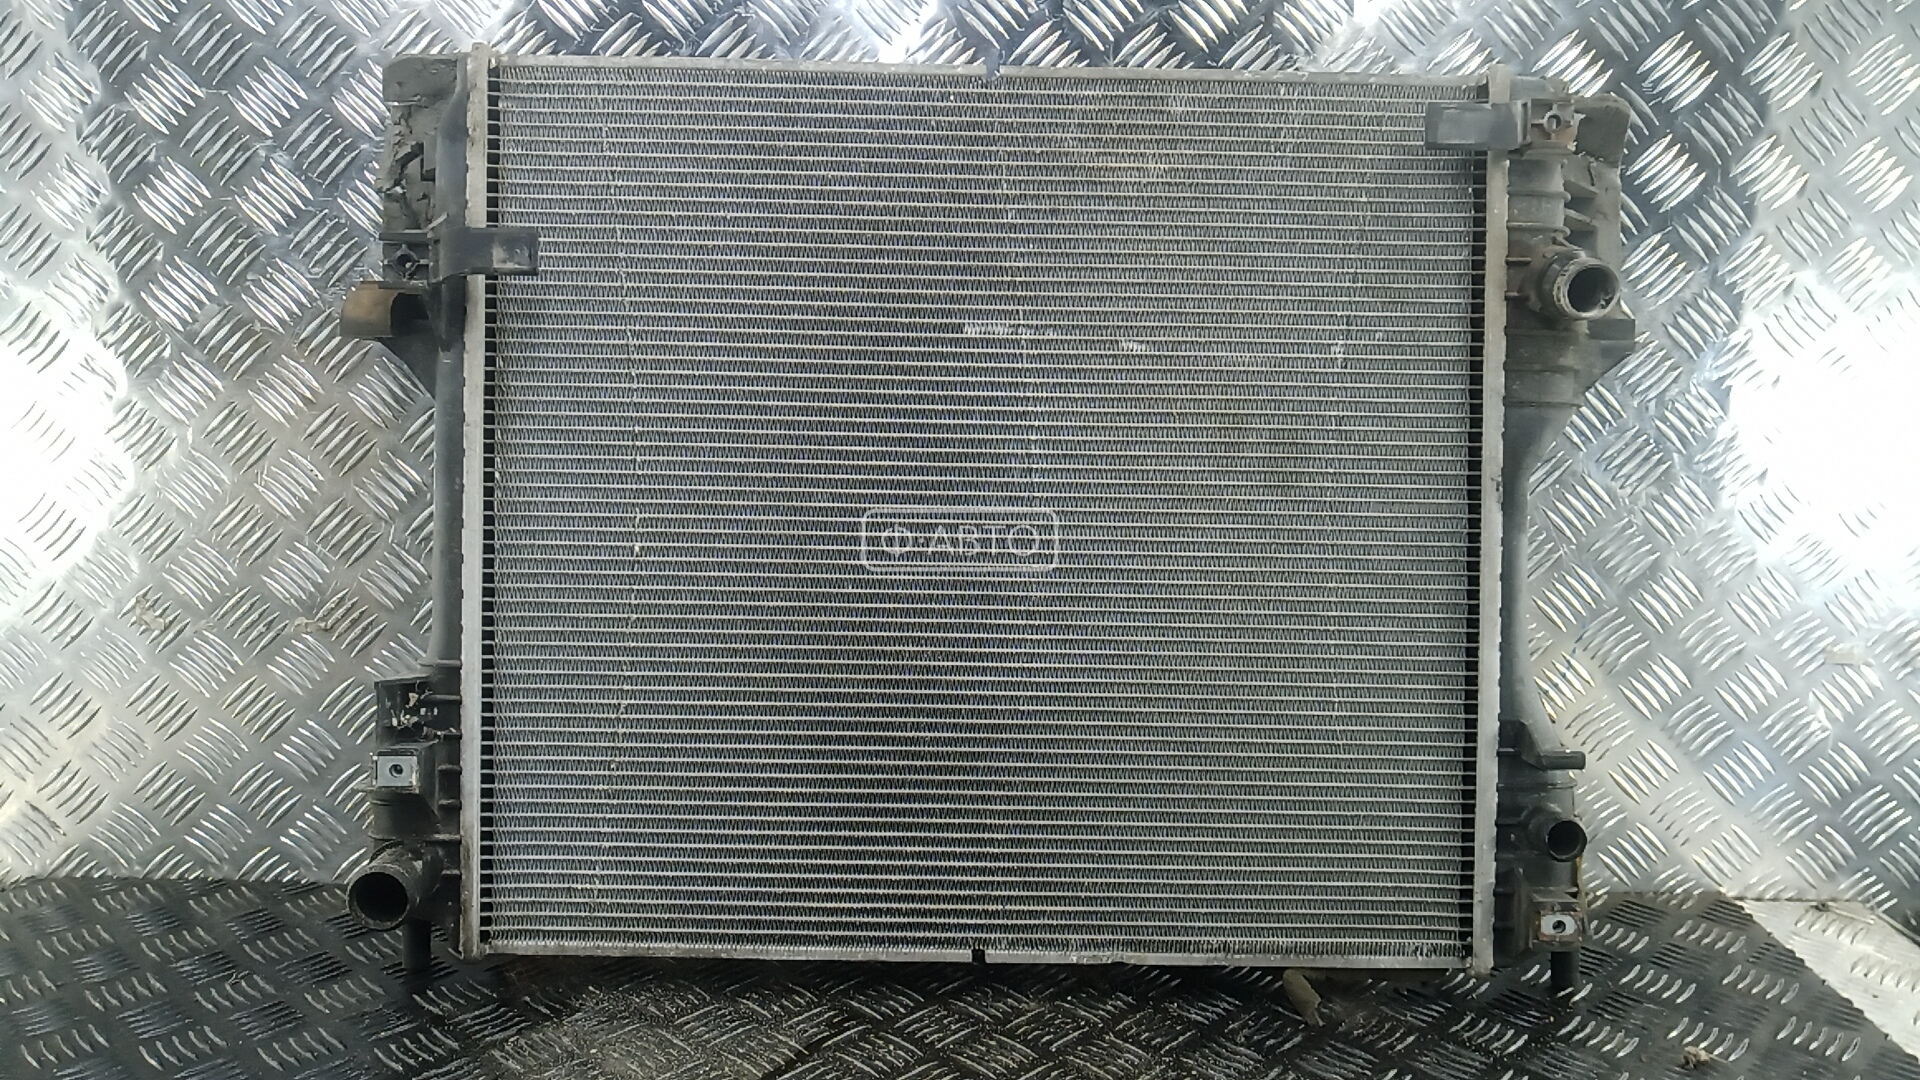 Радиатор системы охлаждения JAGUAR XF